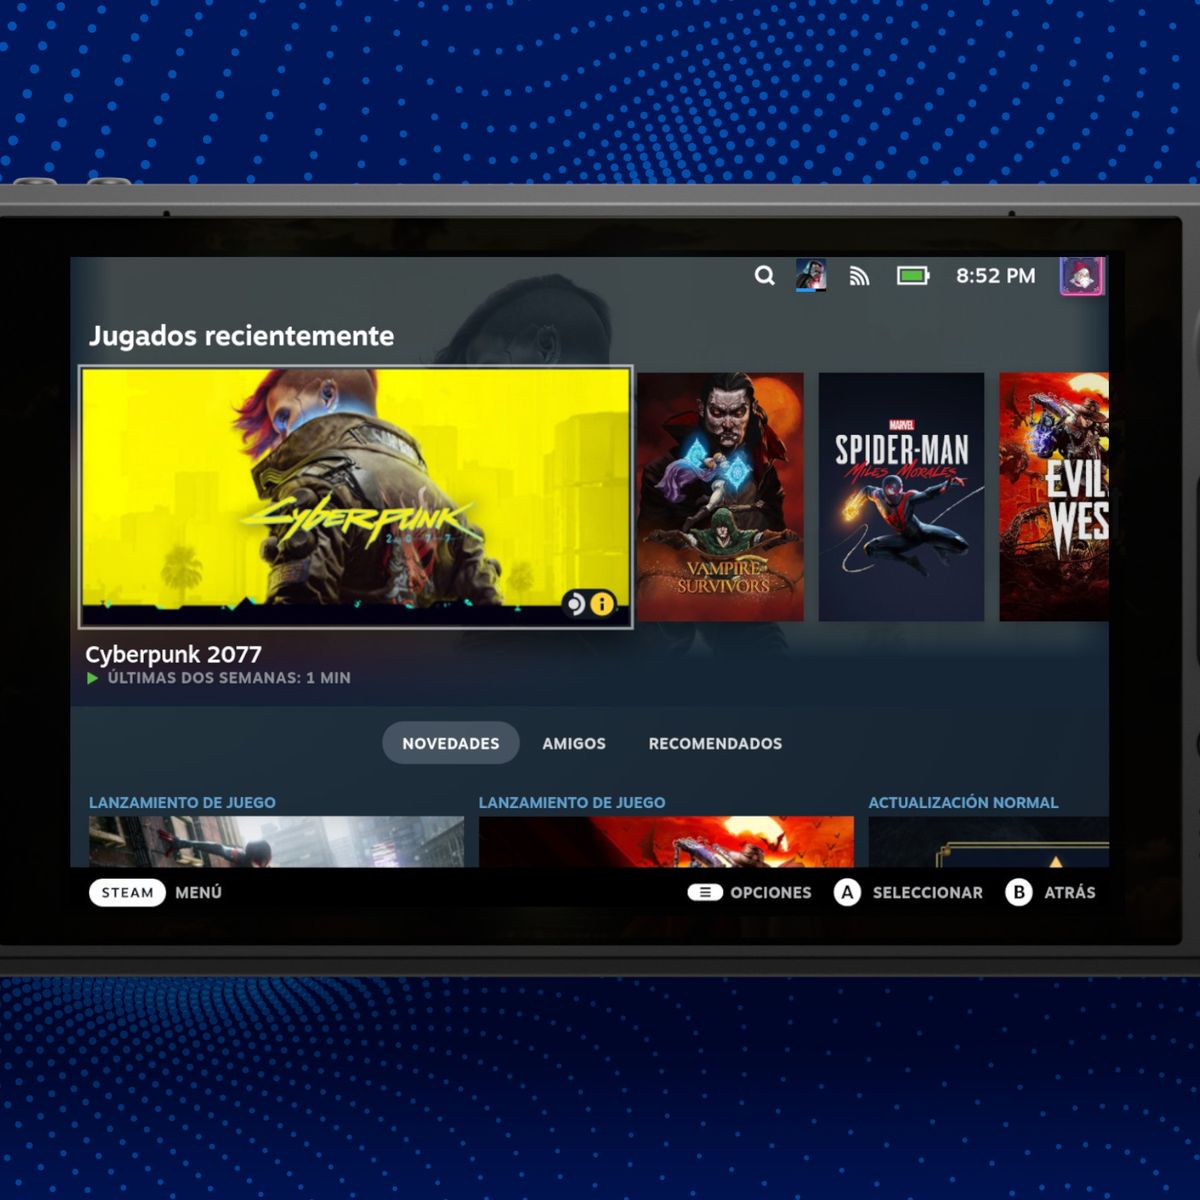 Uncharted ve filtrado su lanzamiento y requisitos en PC a través de la Epic  Games Store